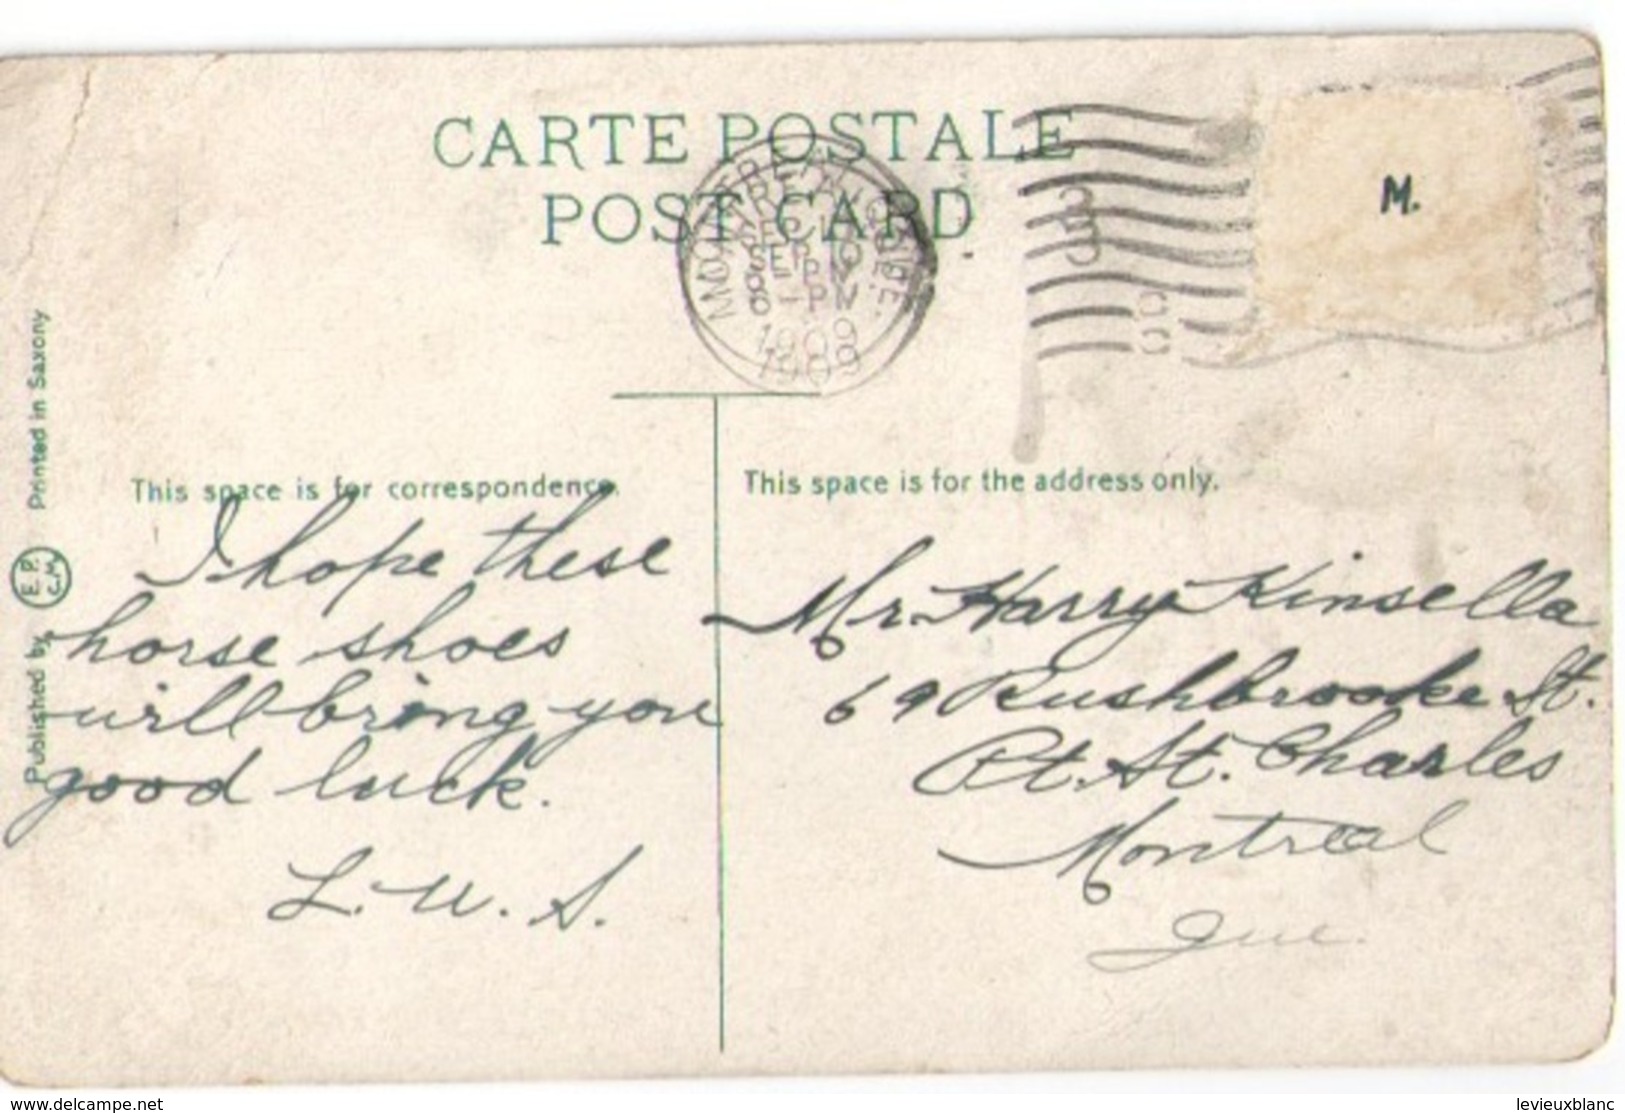 Carte Postale Ancienne/SouvenirHome Week / Equitation /Tréfles Et Fer à Cheval Montréal/ Canada /Saxony/ 1909      CFA44 - Betogingen